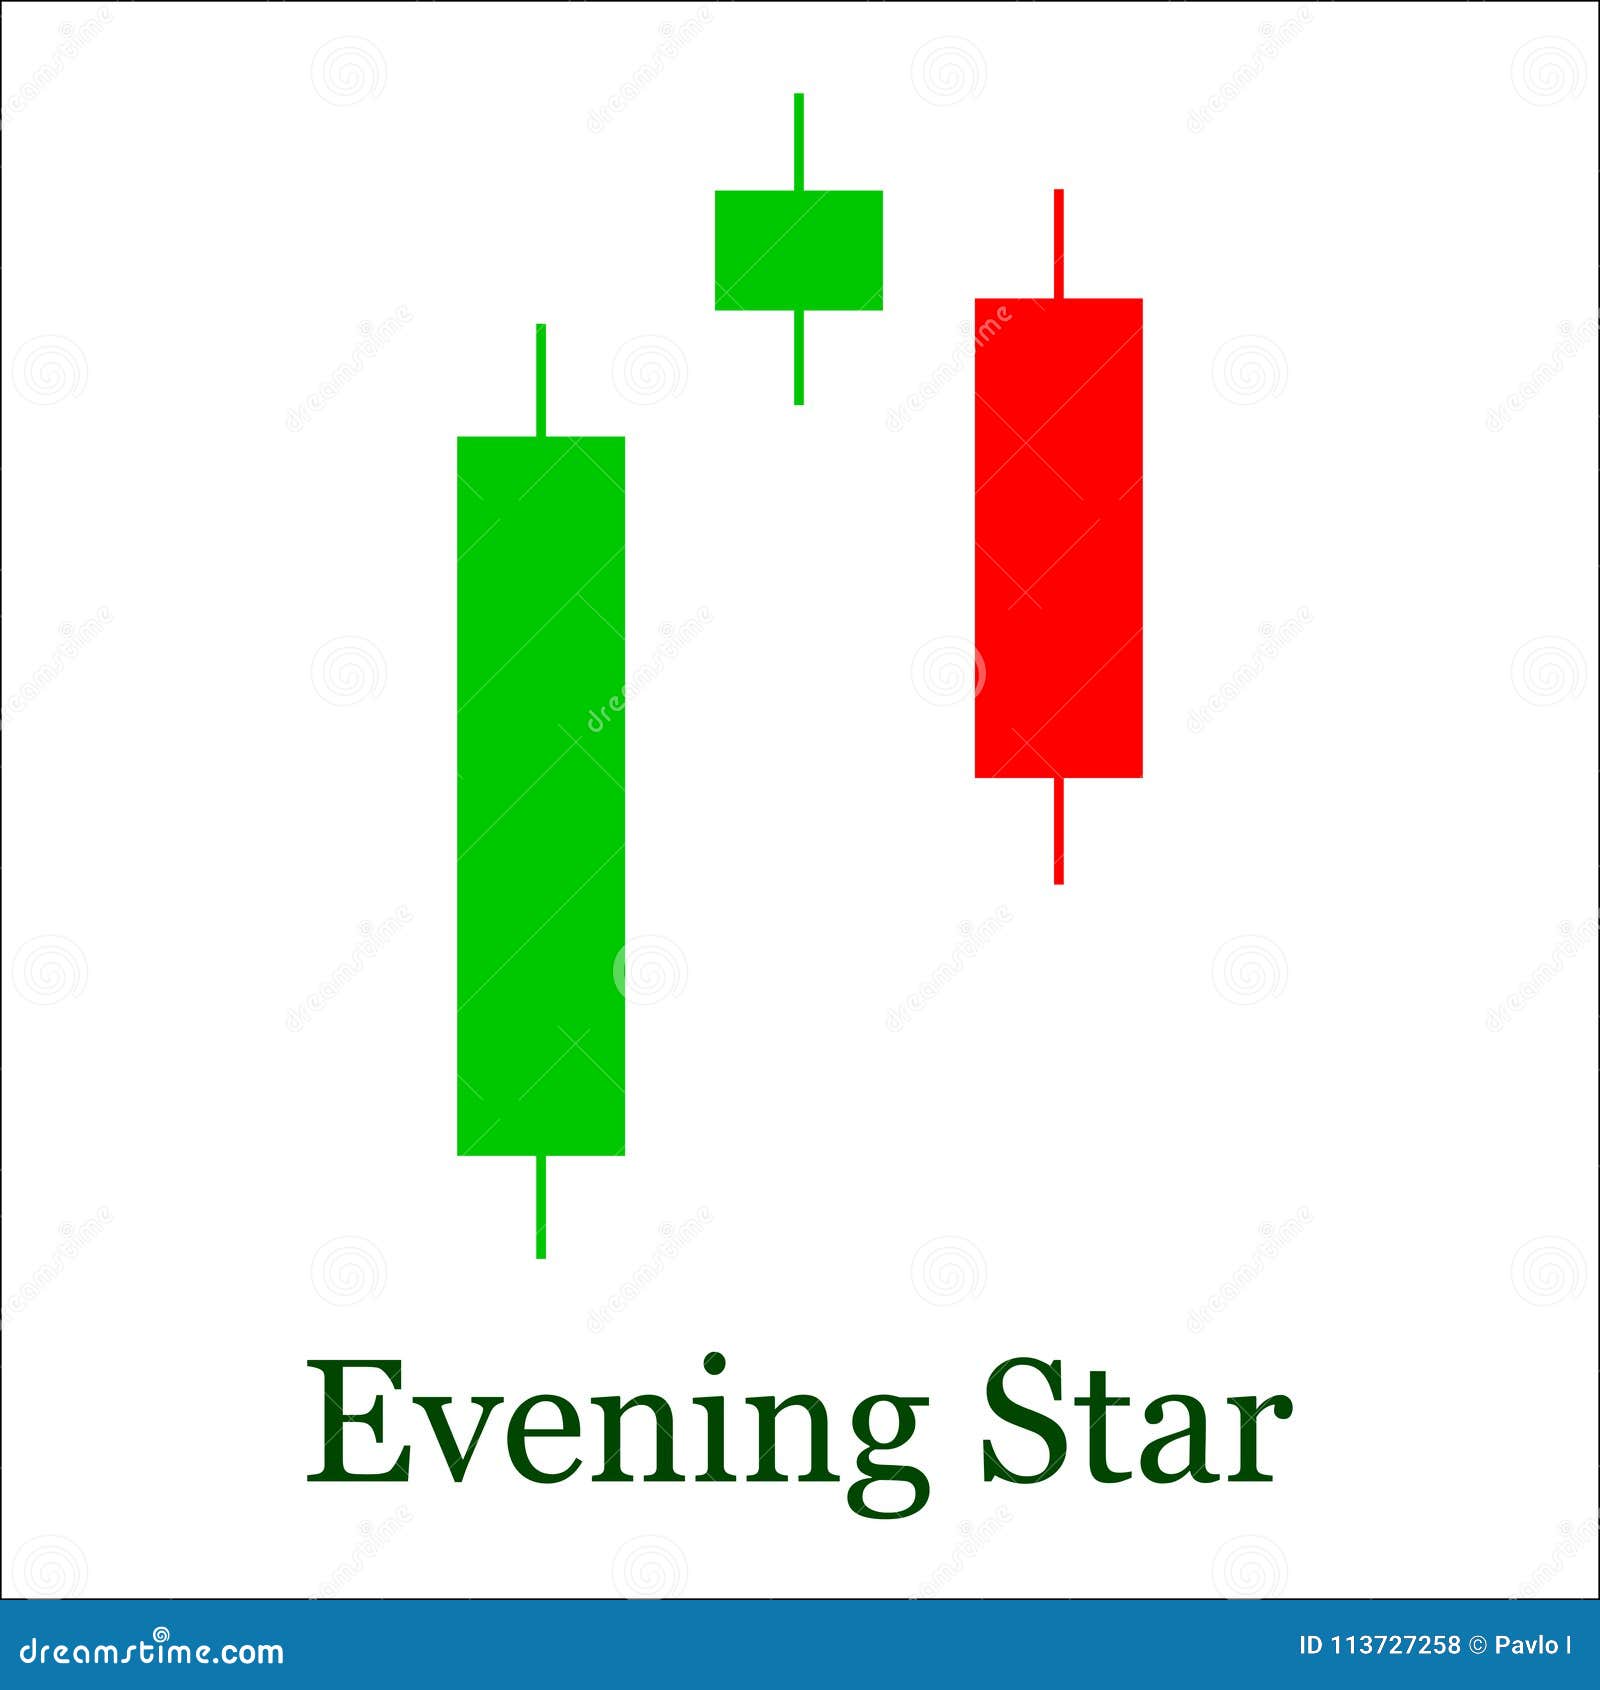 Evening Star Candlestick Chart